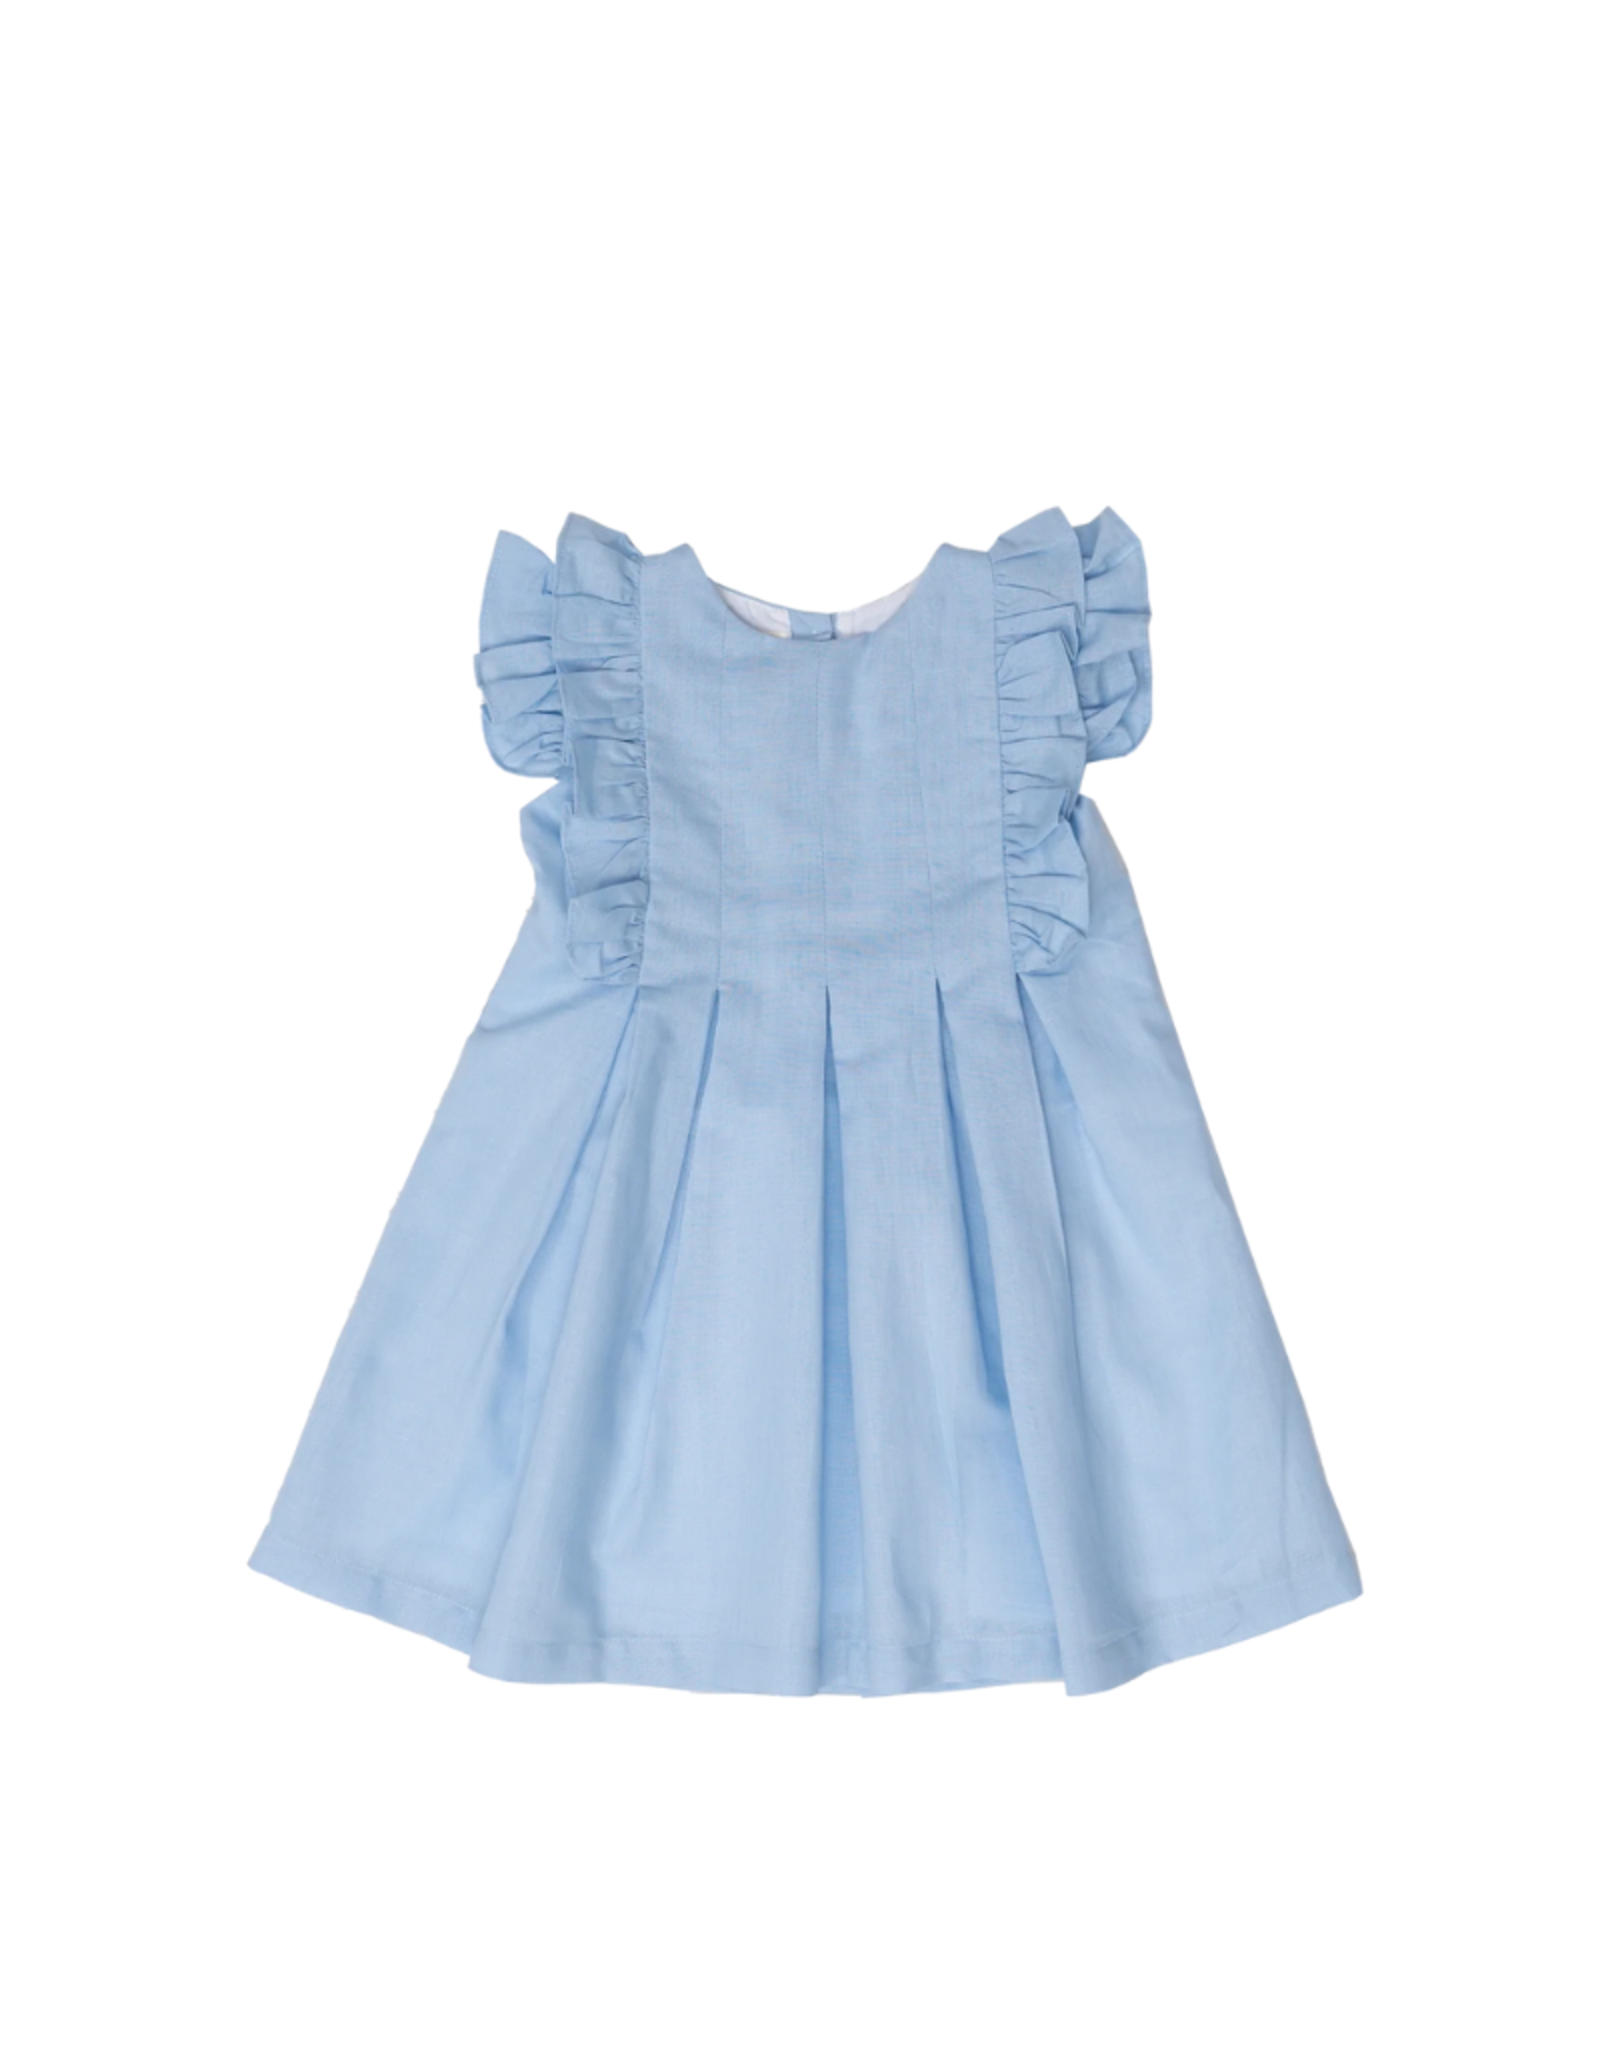 The Oaks Braleigh Blue Linen Dress